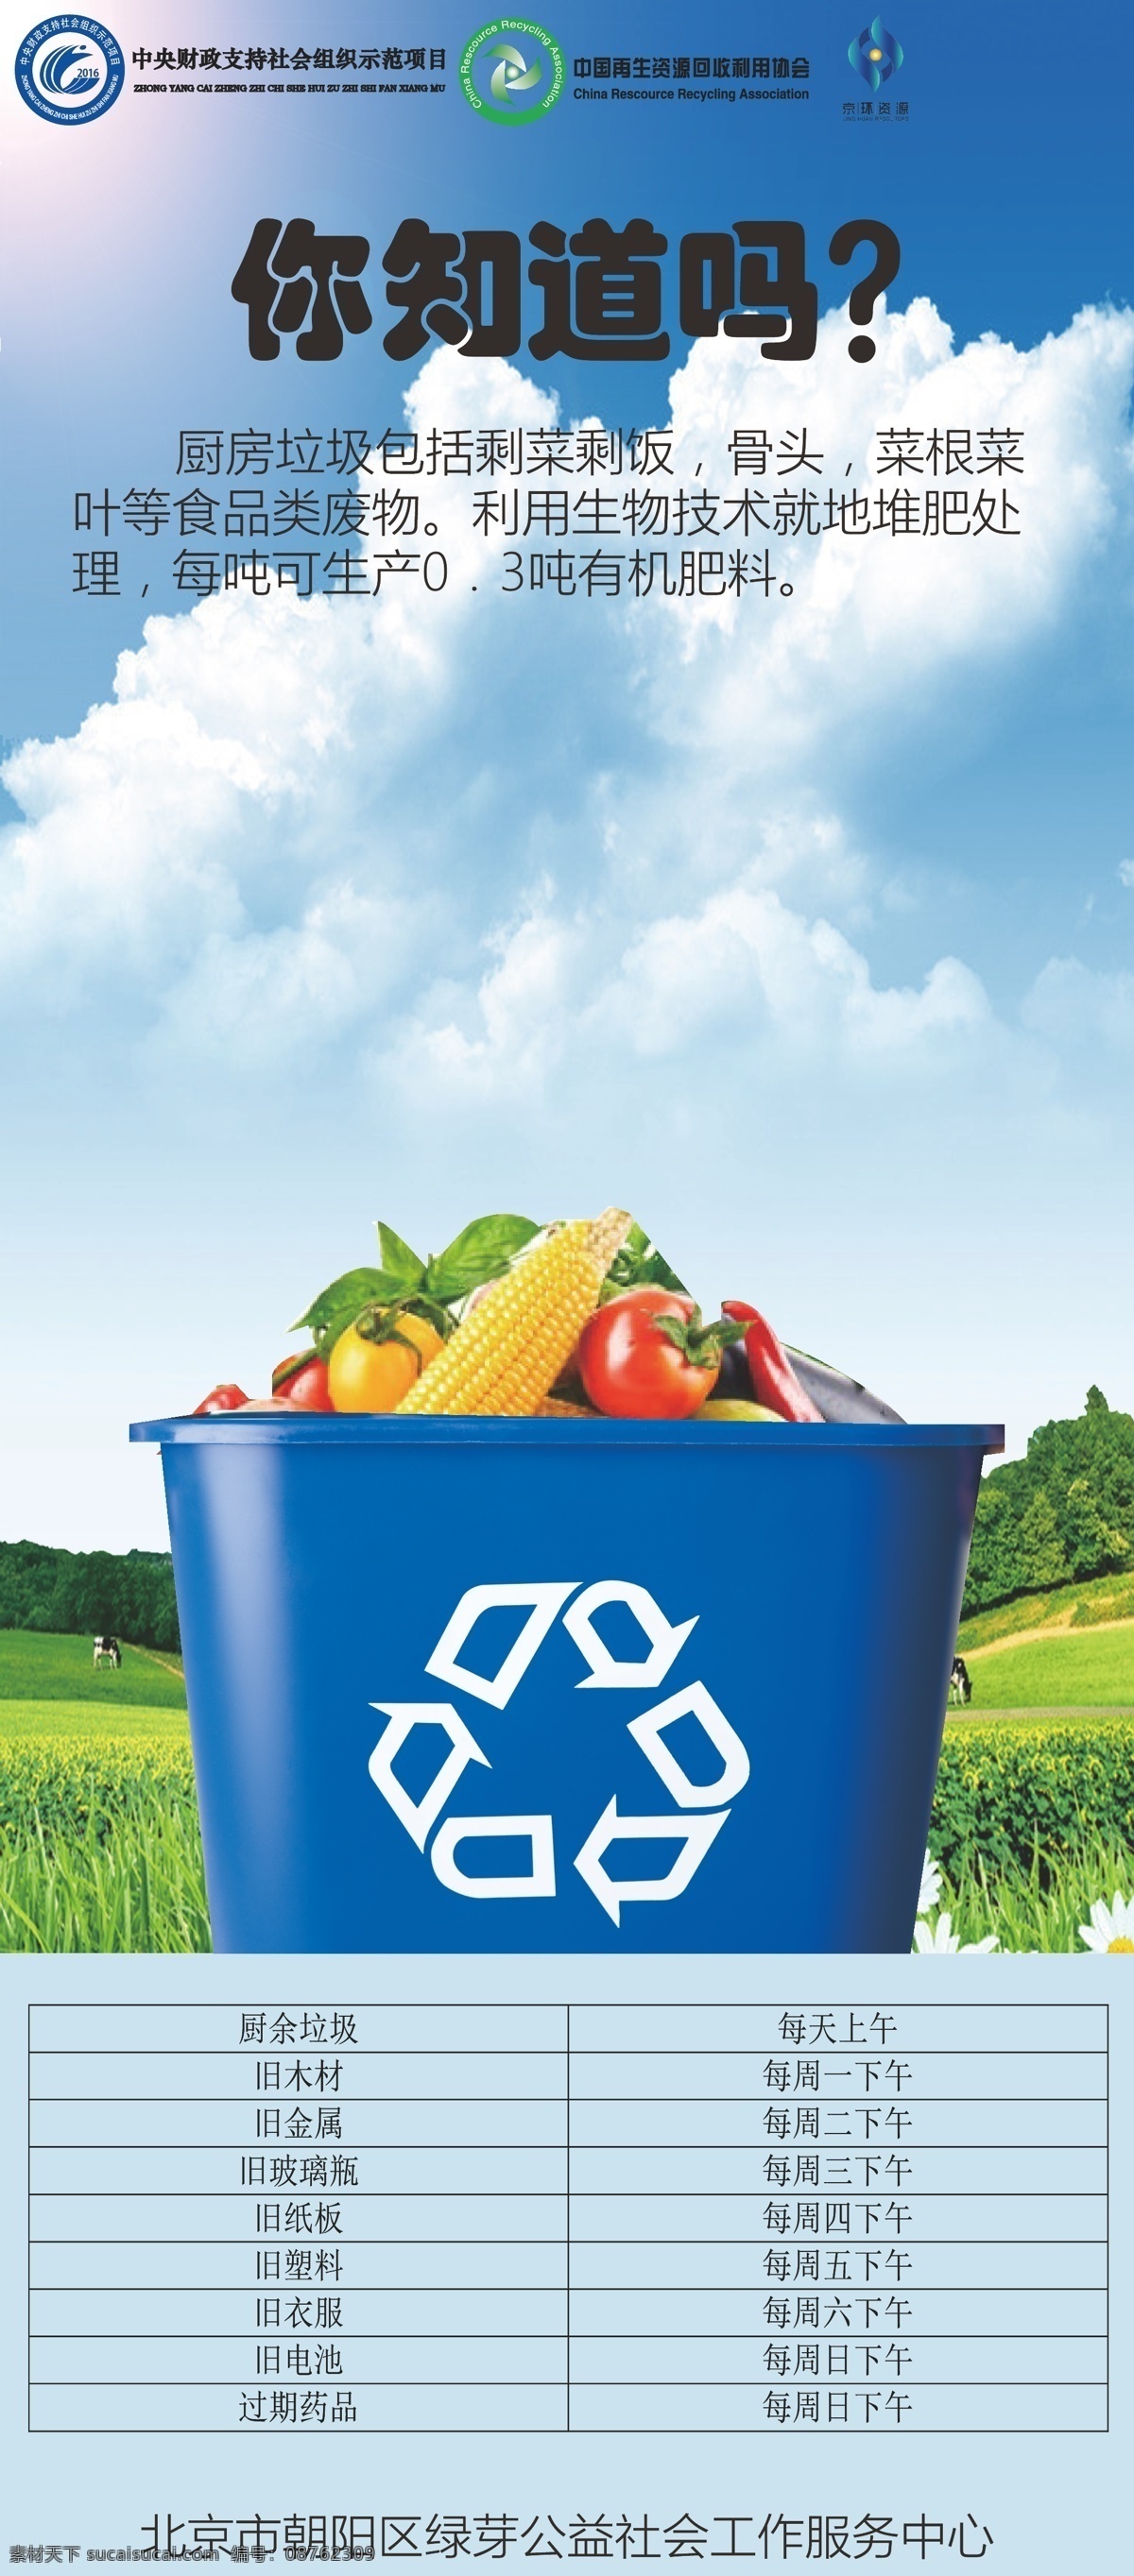 厨房 垃圾 回收 利用 厨房垃圾利用 利用生物技术 垃圾利用 环保利用 有机肥料 矢量图库